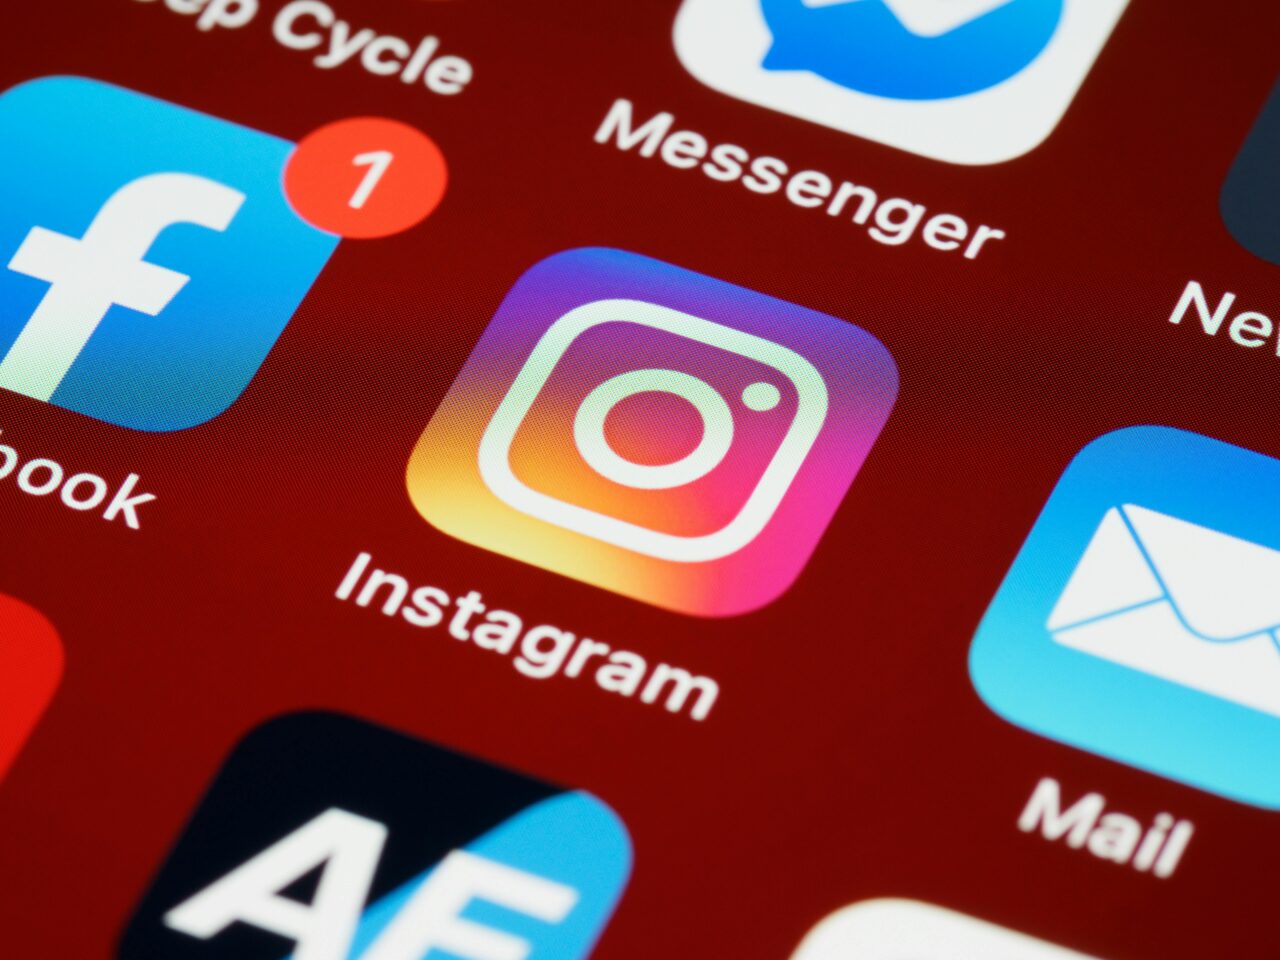 Jak usunąć konto na IG? Zbliżenie na ikonę aplikacji Instagram na ekranie smartfona z widocznymi ikonami innych aplikacji, takimi jak Facebook i Messenger w tle.